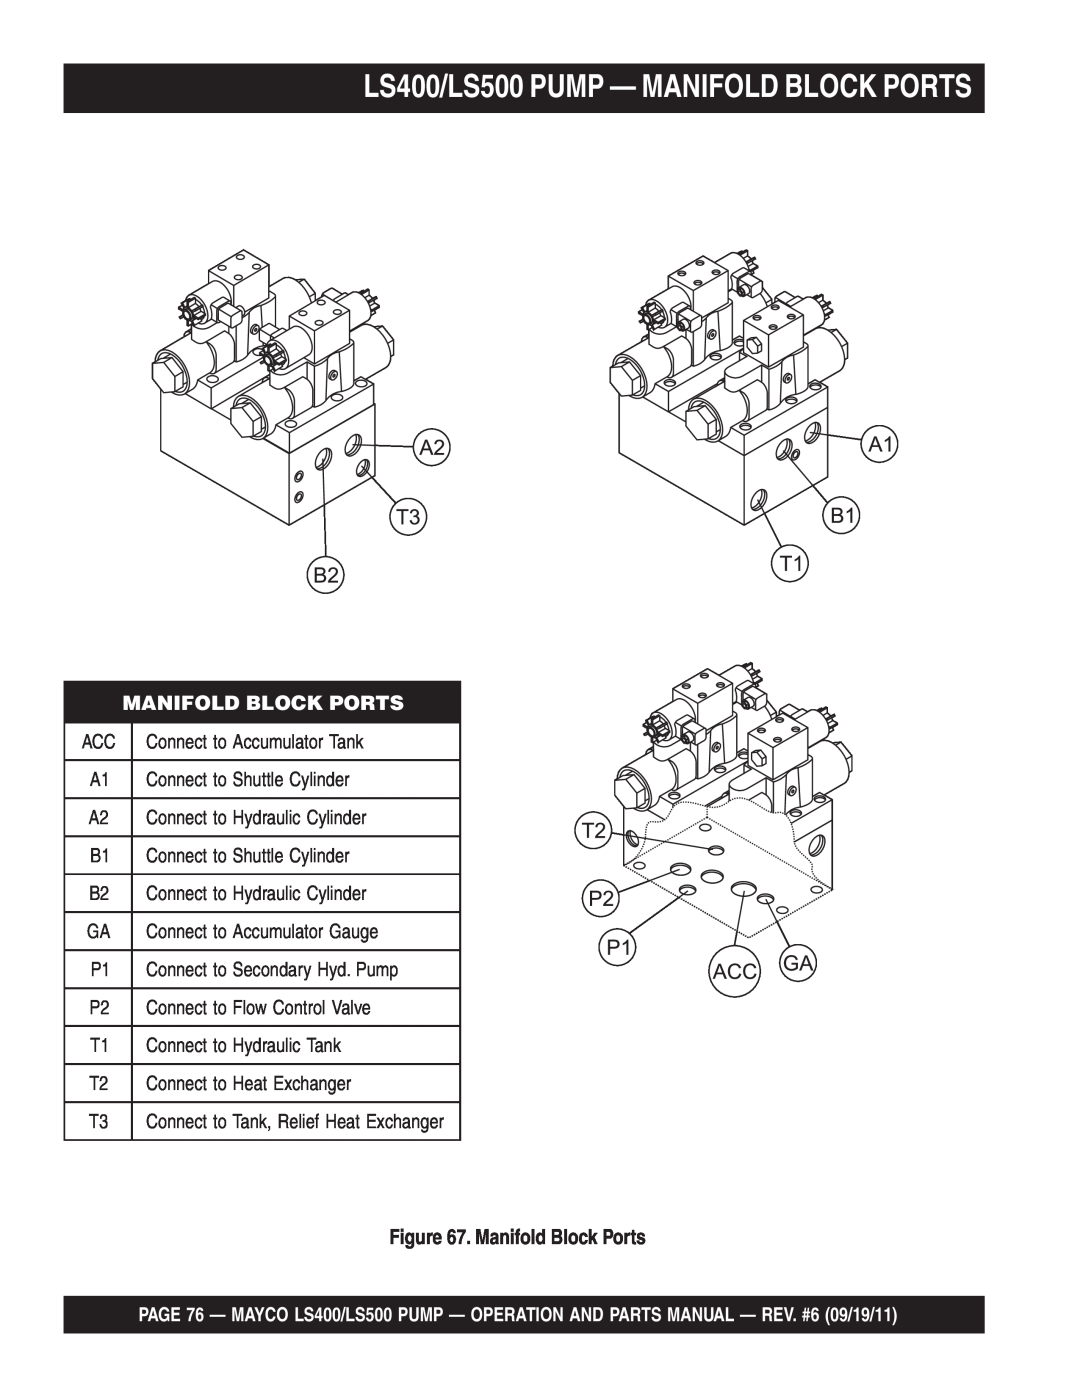 Multiquip manual LS400/LS500 PUMP - MANIFOLD BLOCK PORTS, Manifold Block Ports 